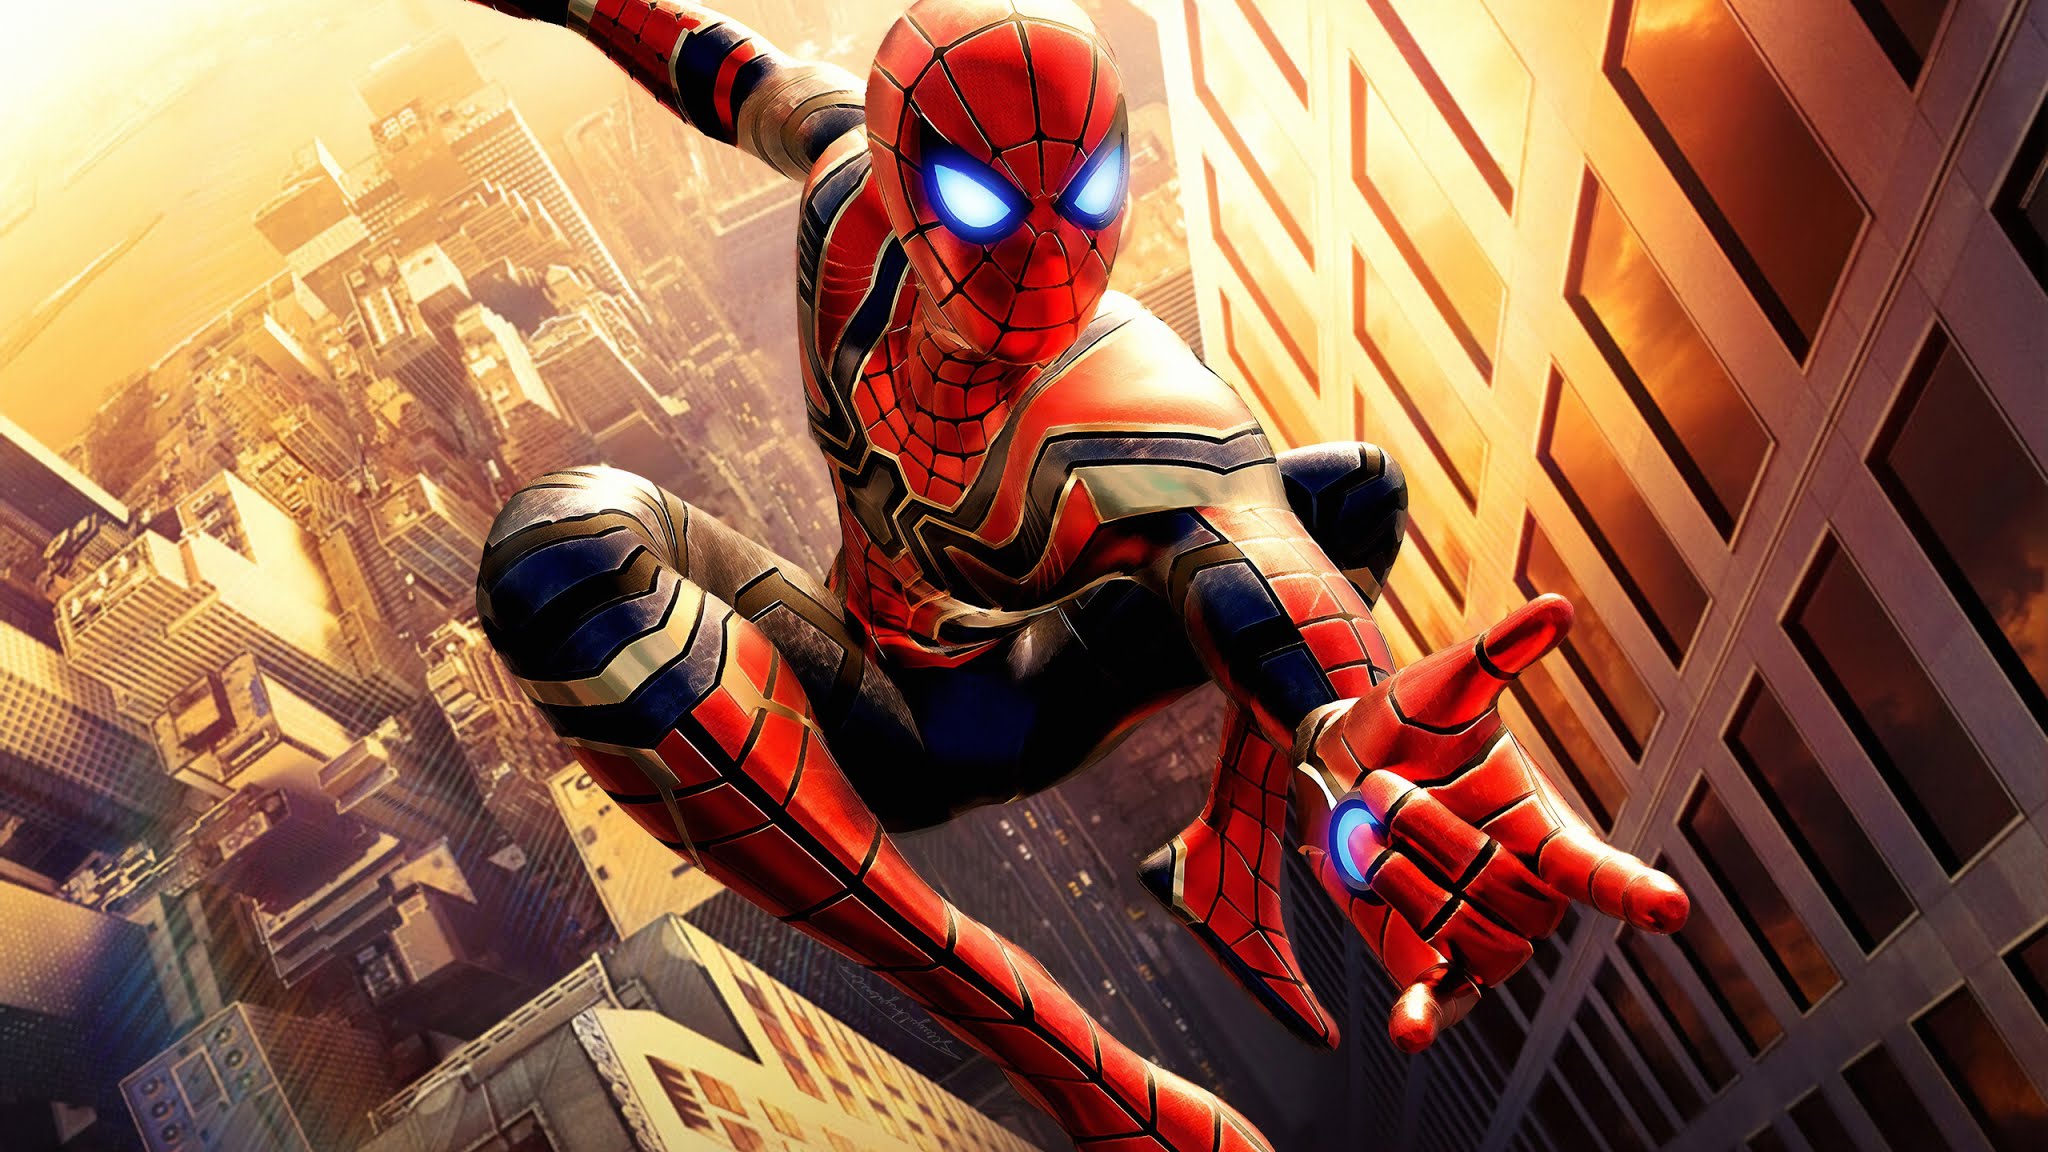 Spiderman Hd Wallpaper - Papel De Parede Homem Aranha - HD Wallpaper 